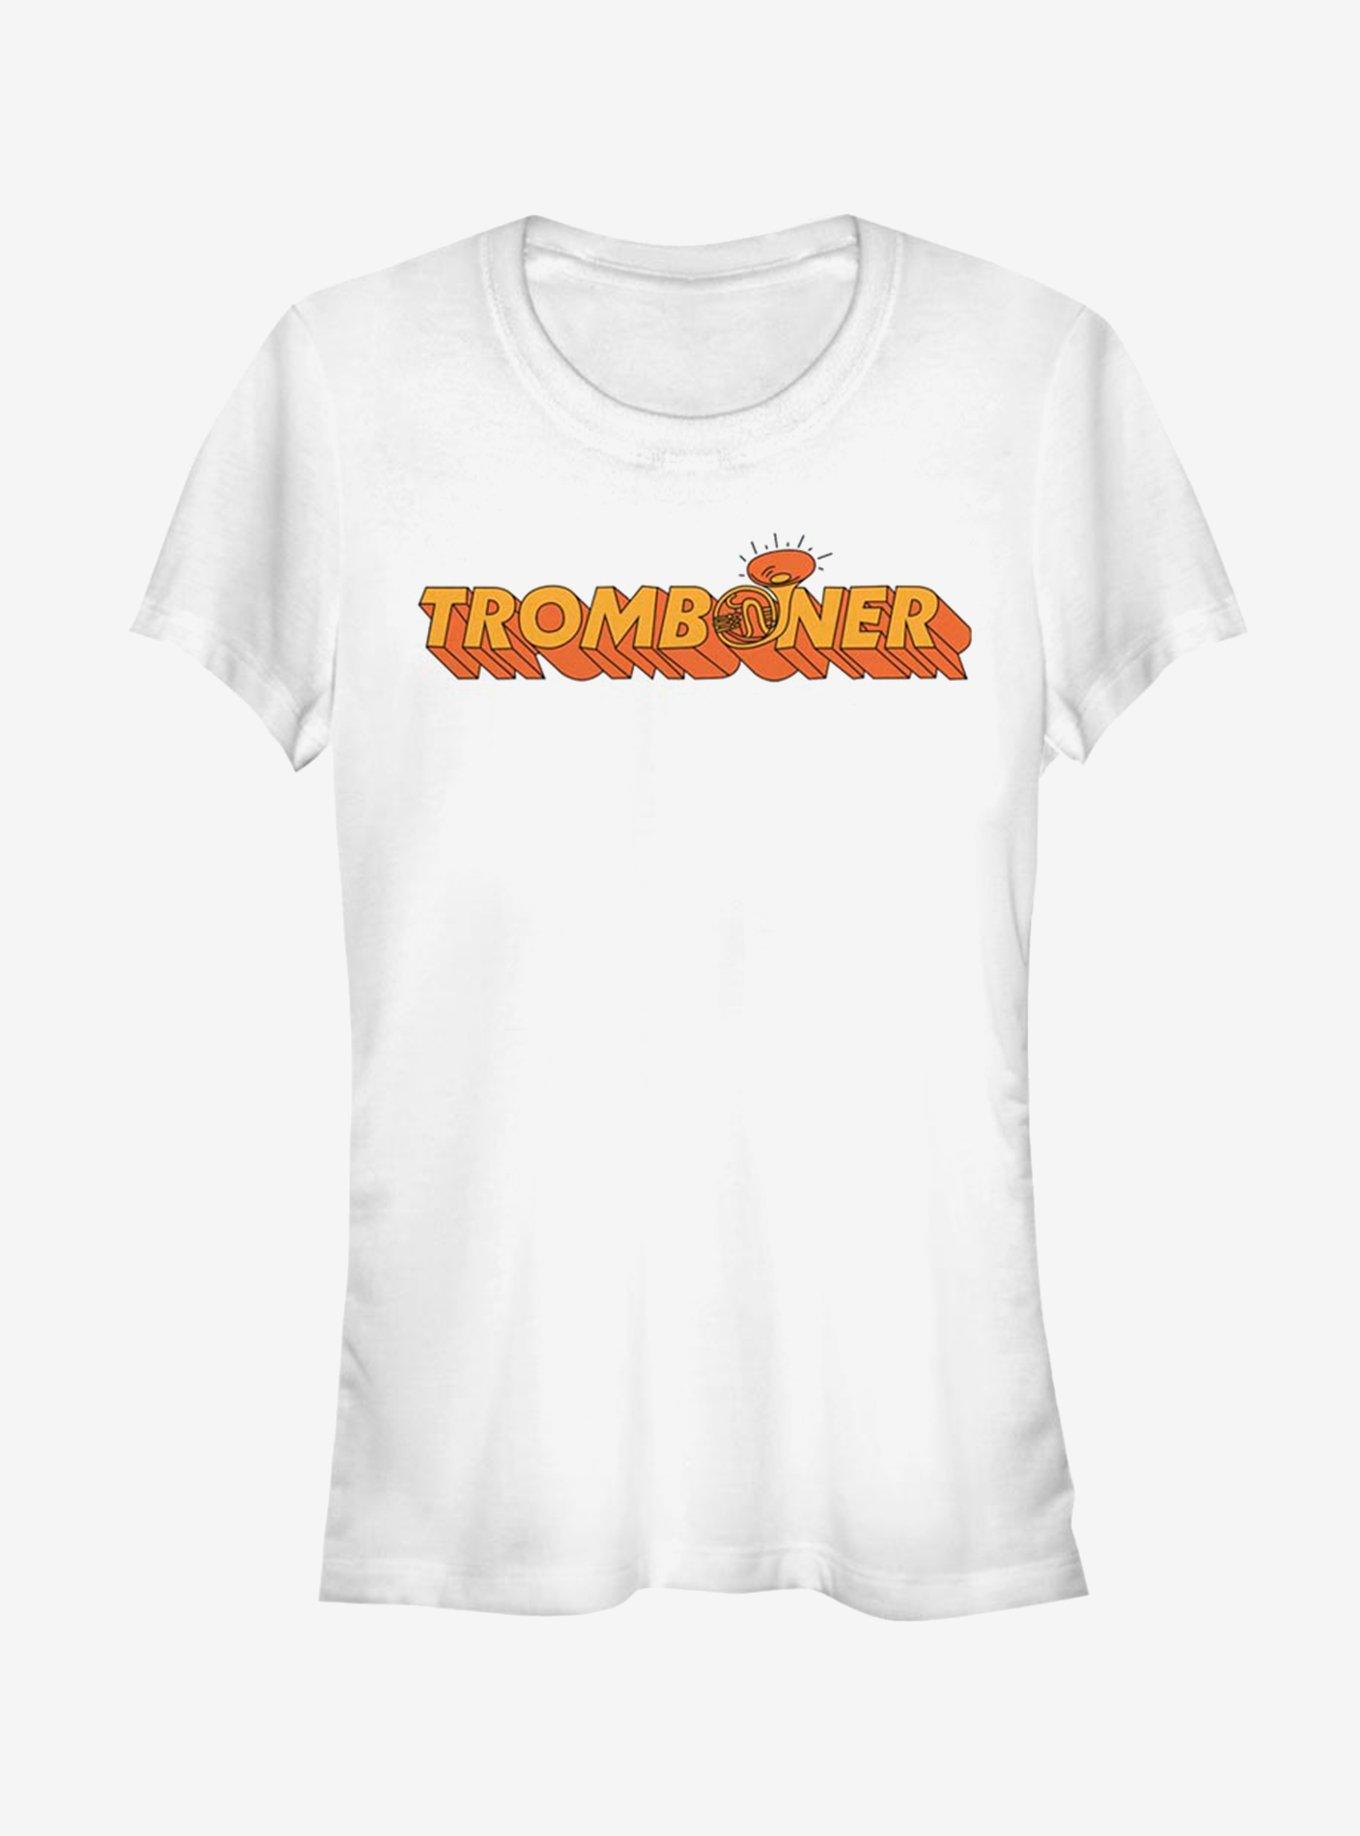 Sex Education Tromboner Girls T-Shirt, WHITE, hi-res